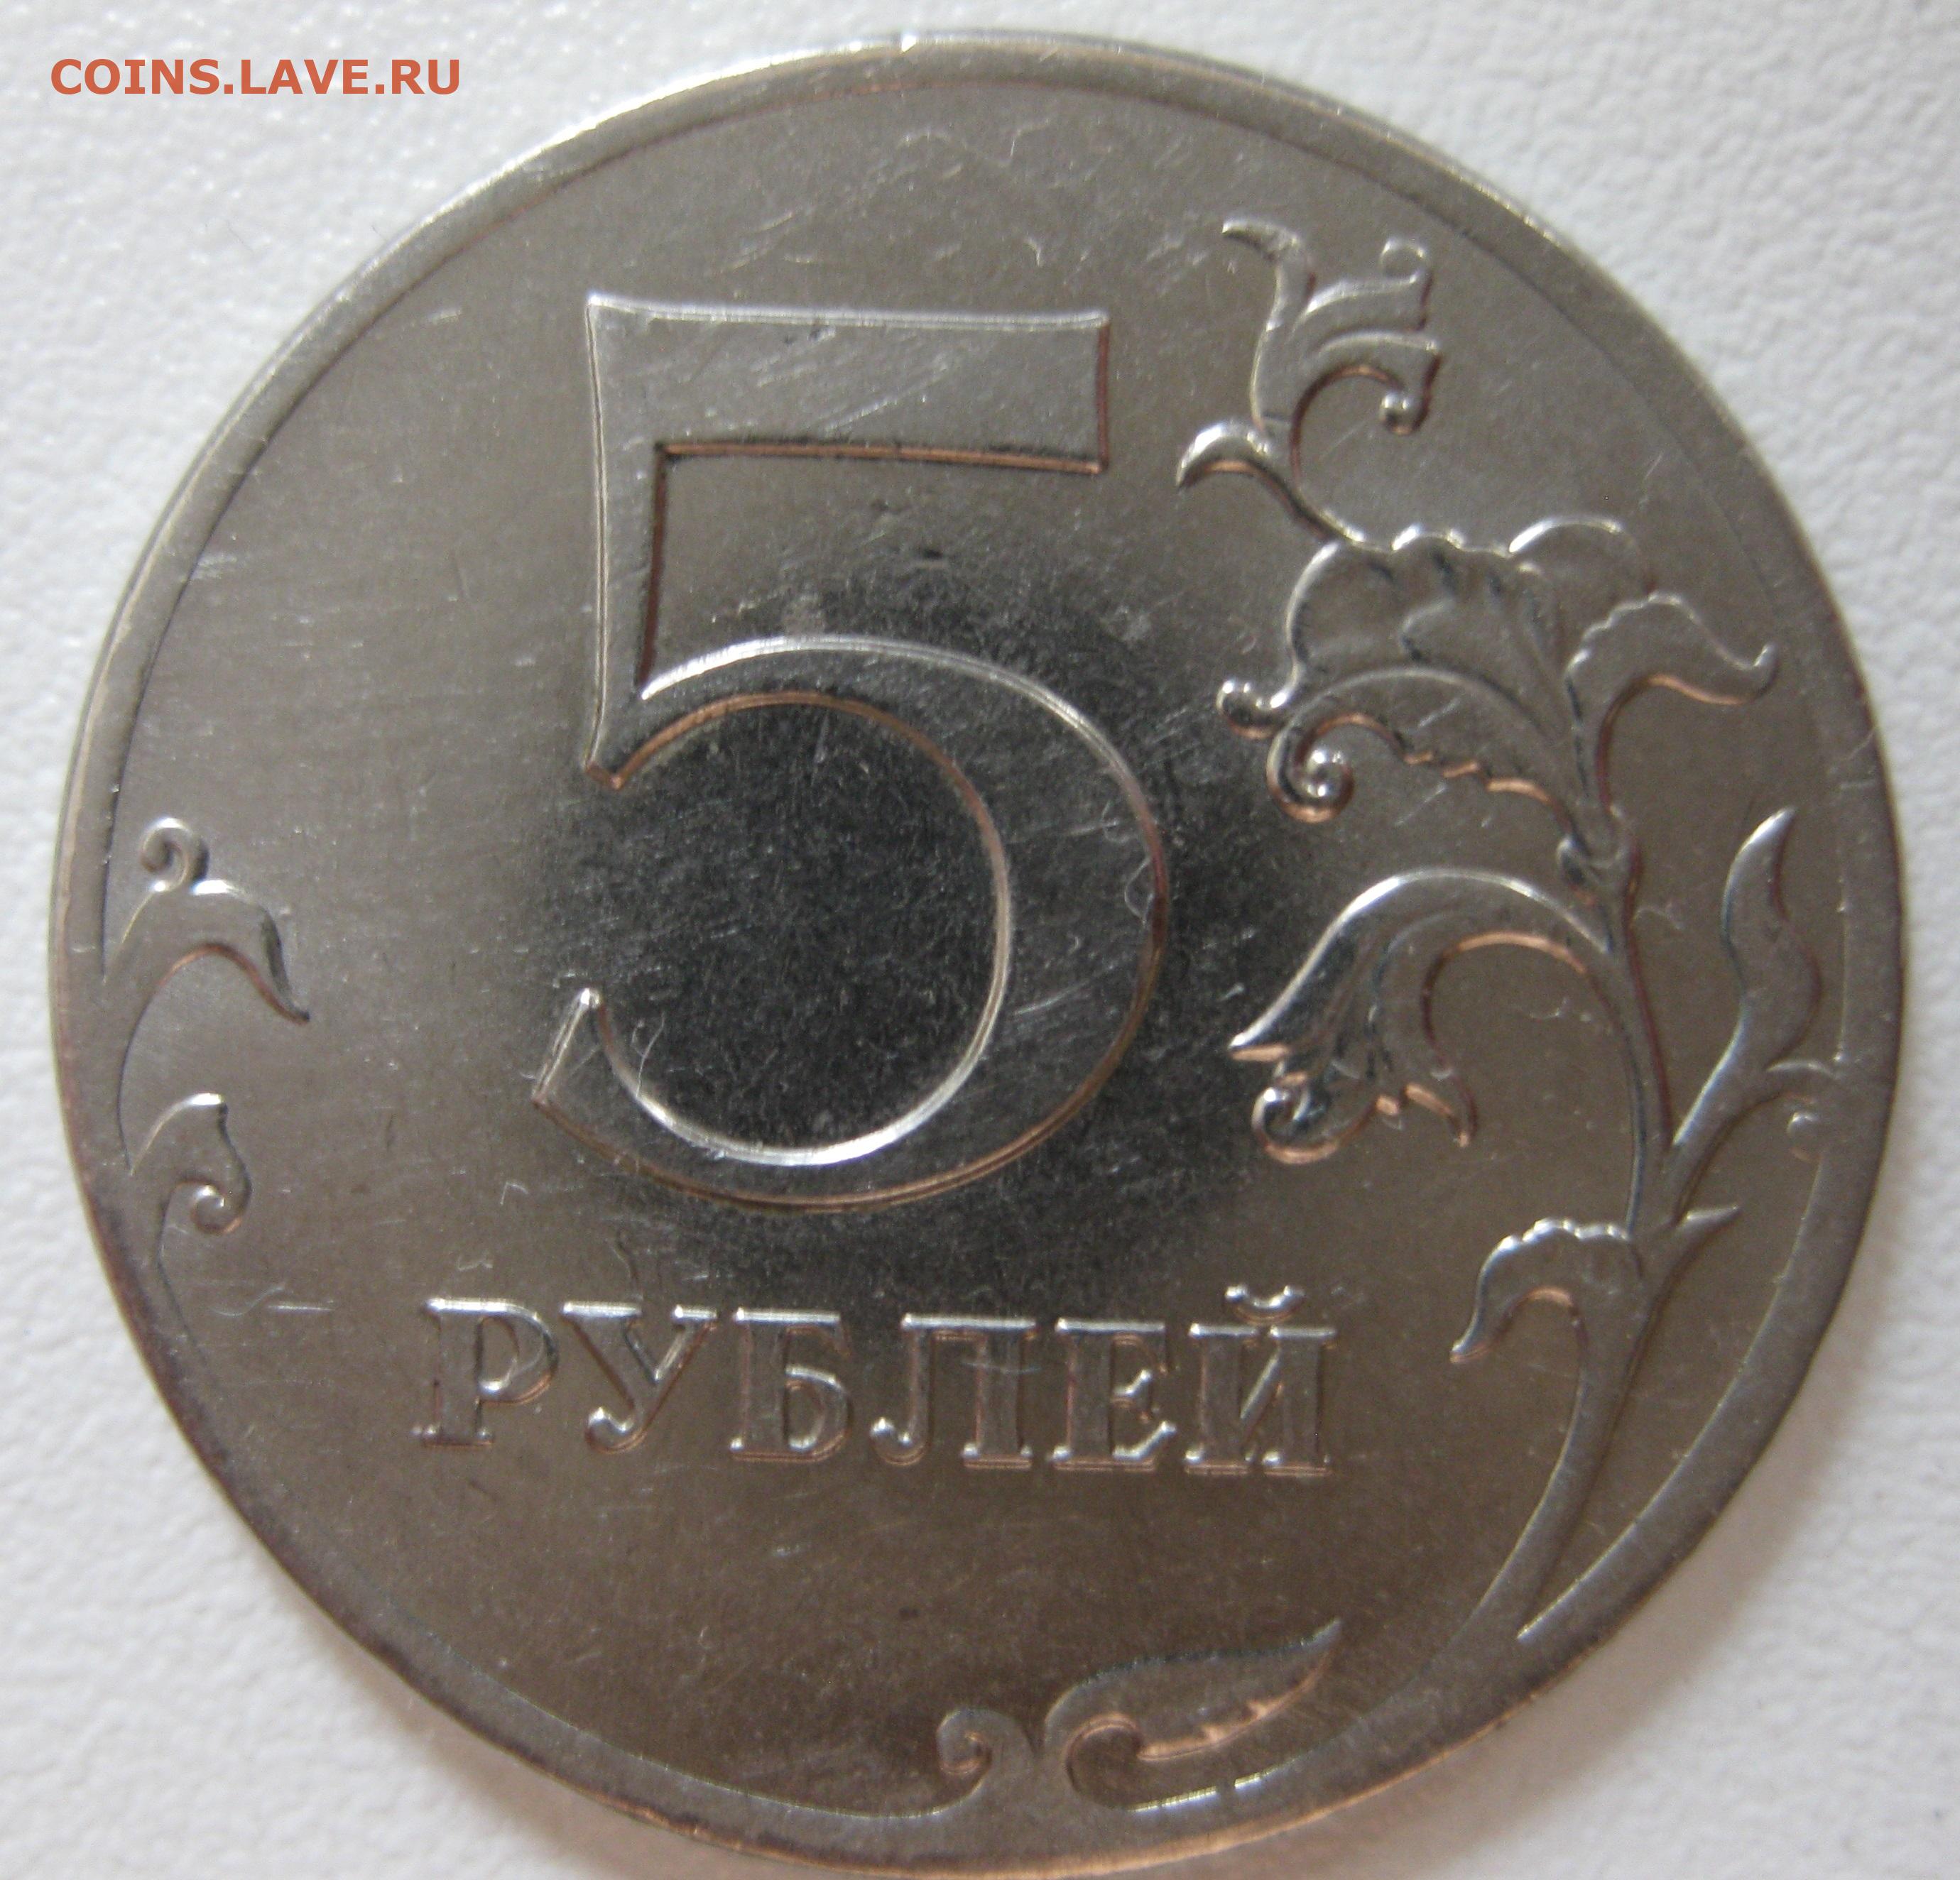 Рубль 5 32. 5 Рублей 2017. Брак монета реверс-реверс. 5 Рублей брак чеканки. 1 Рубль 2020 брак раскол штемпеля.